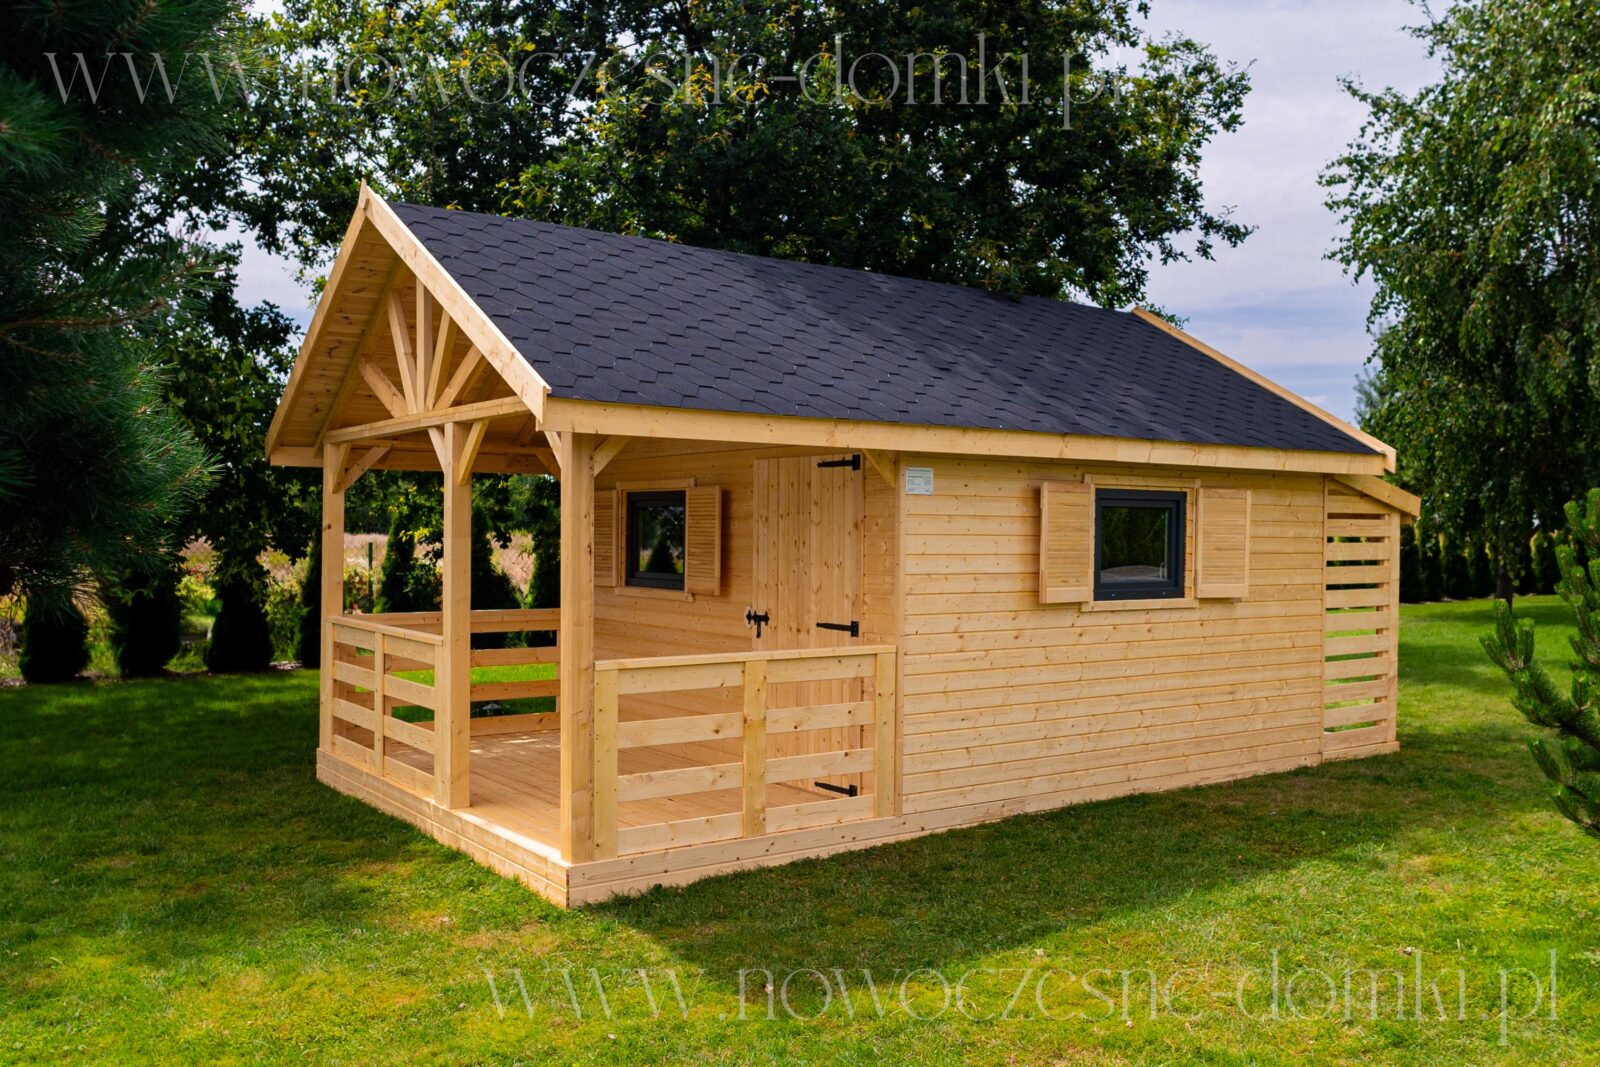 Drewniany domek letniskowy na działkę ogrodową - idealne miejsce na relaks i wypoczynek.